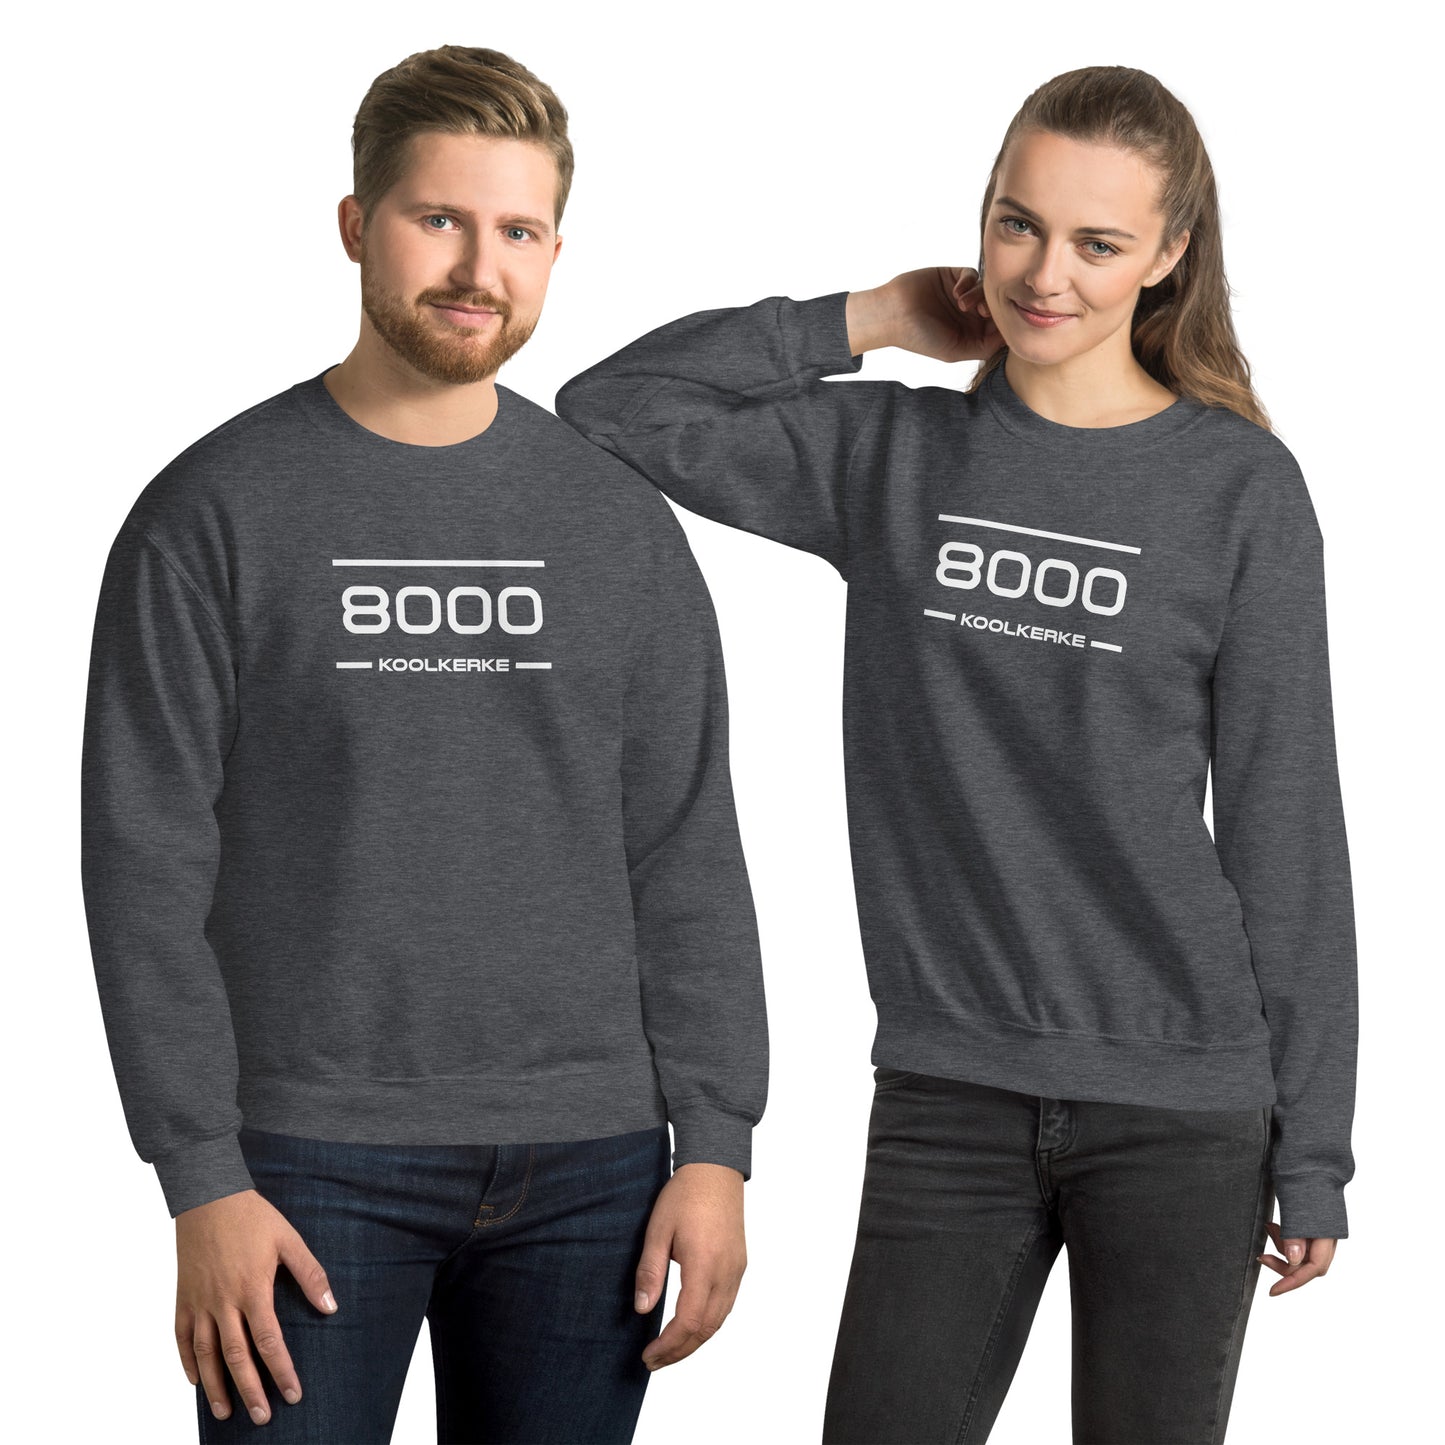 Sweater - 8000 - Koolkerke (M/V)